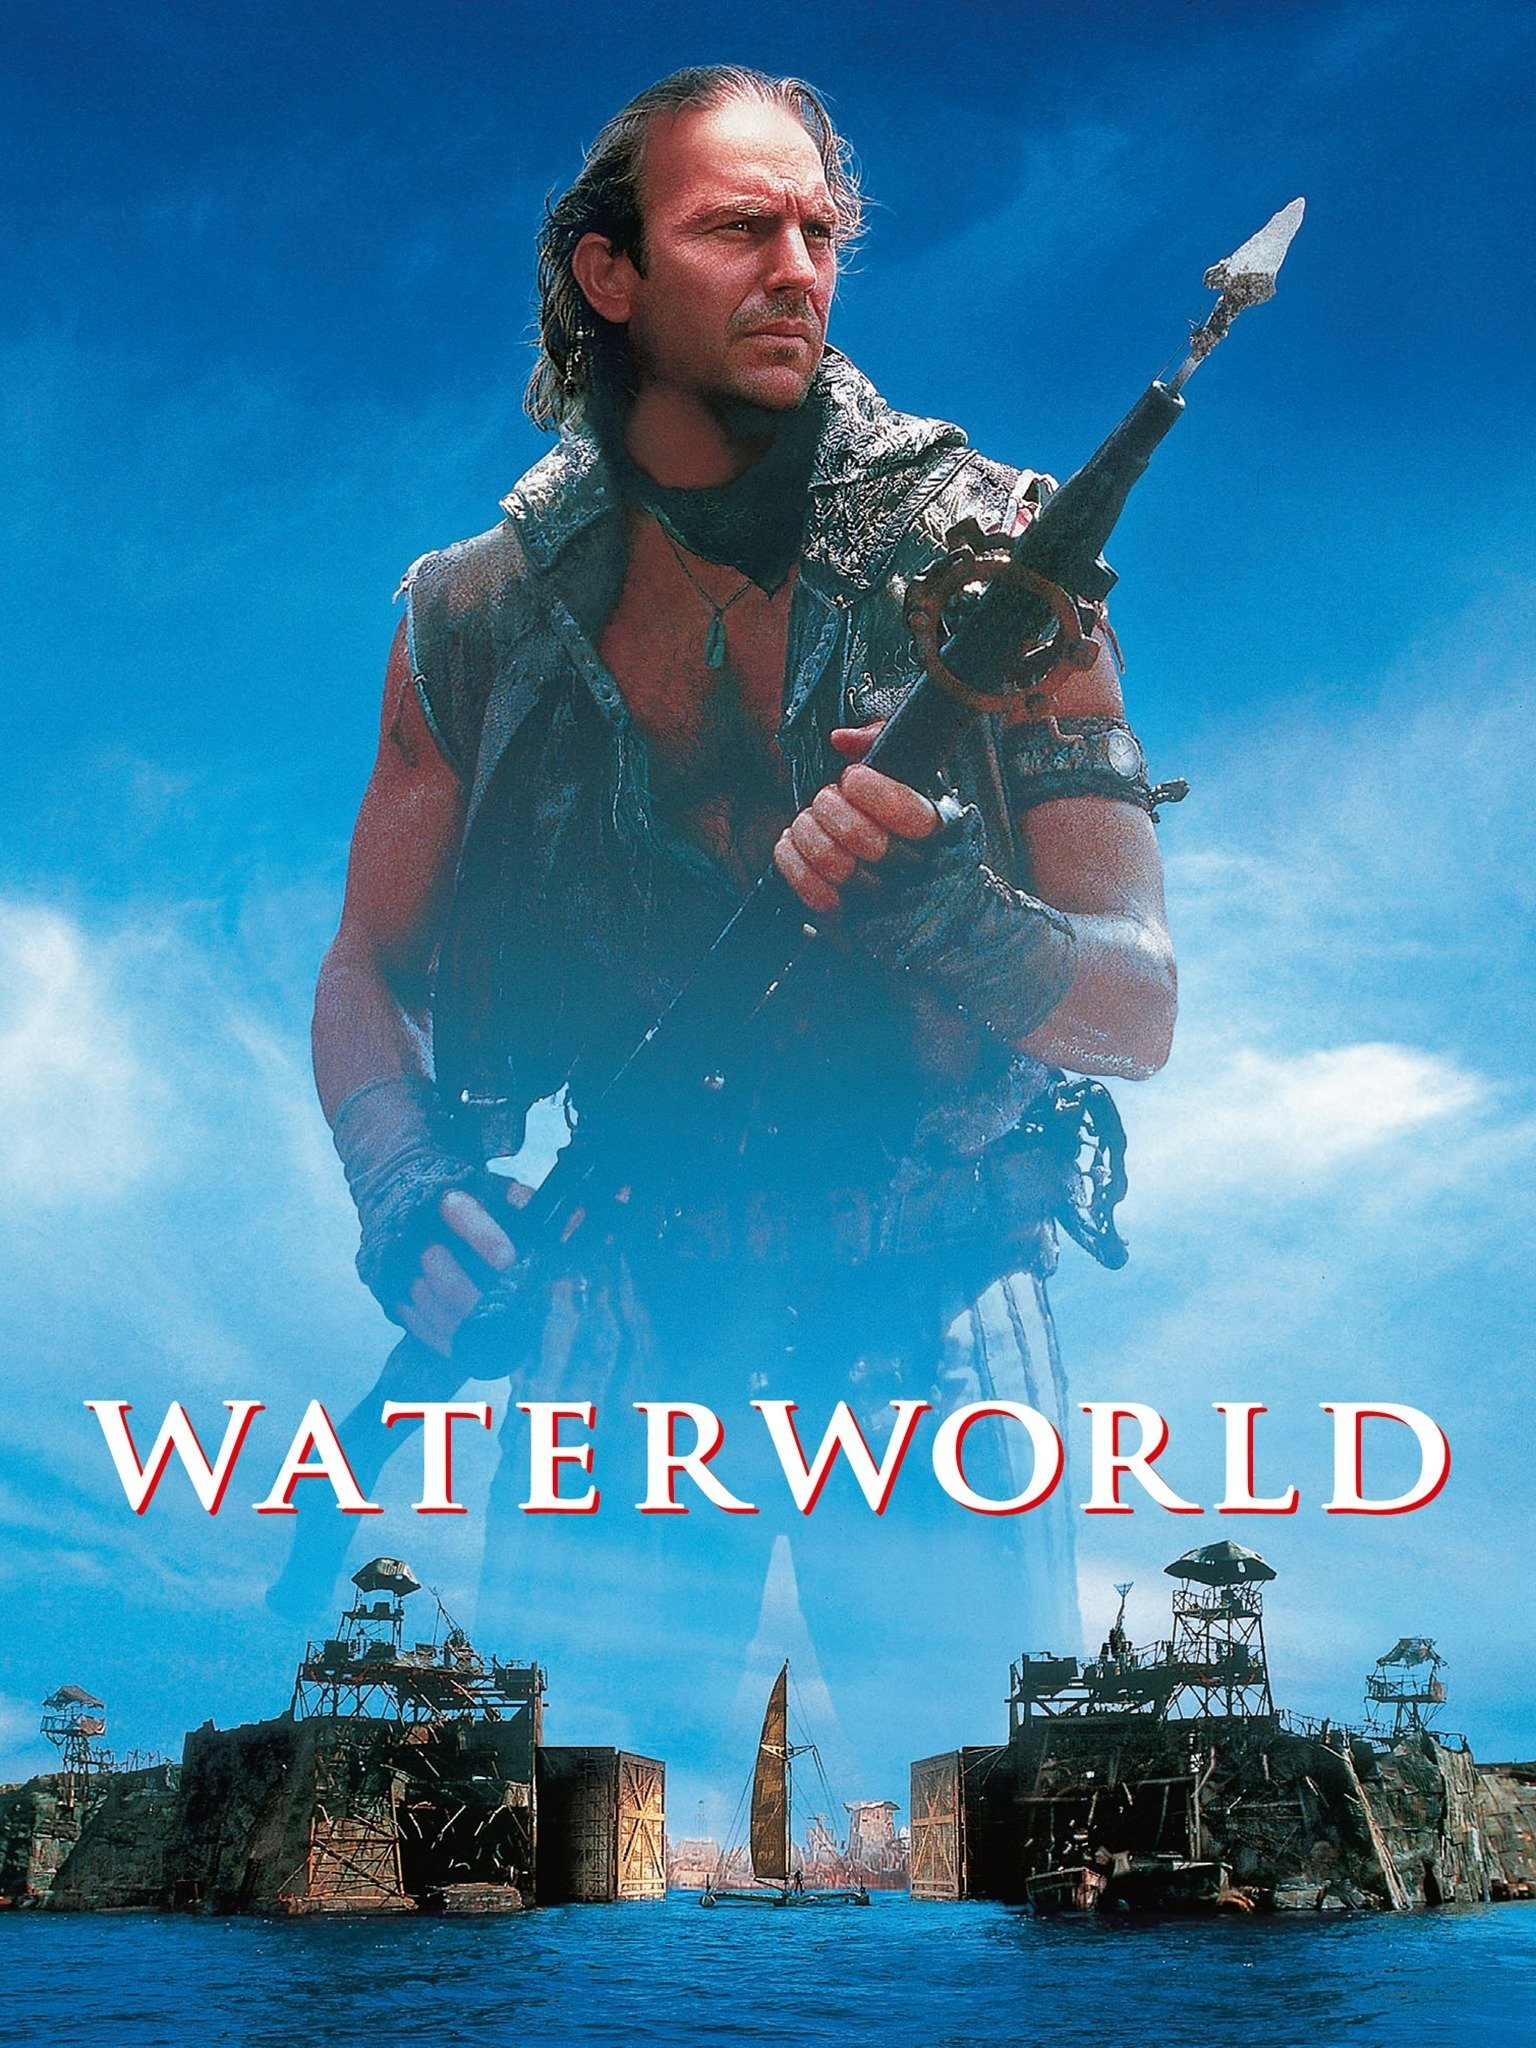 waterworld movie torrent download